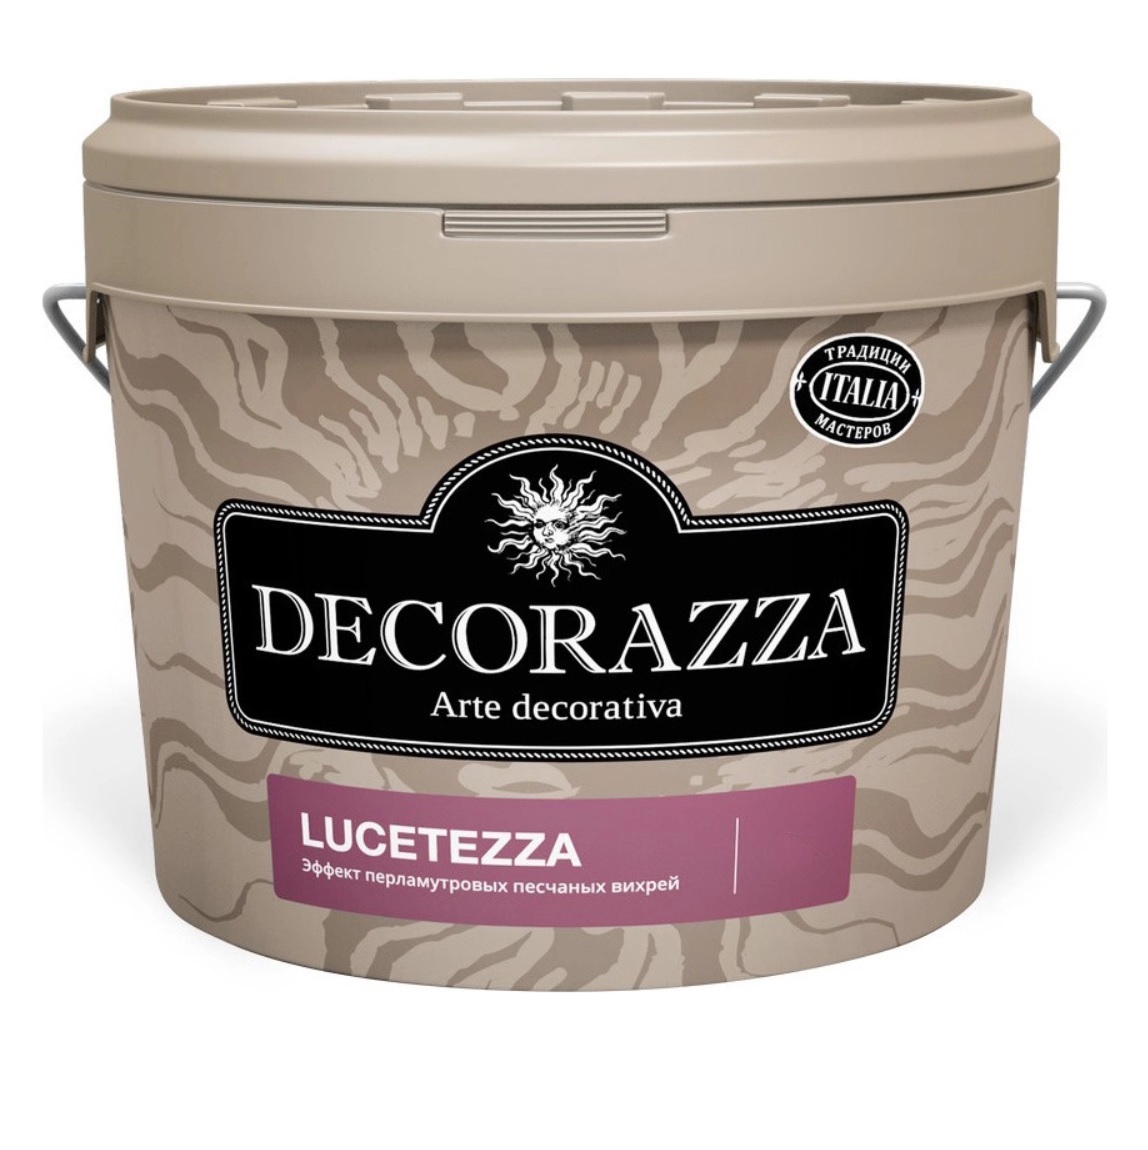 Декоративная краска Decorazza lucetezza база aluminium 5.0кг краска decorazza lucetezza nova lcn 001 5 л